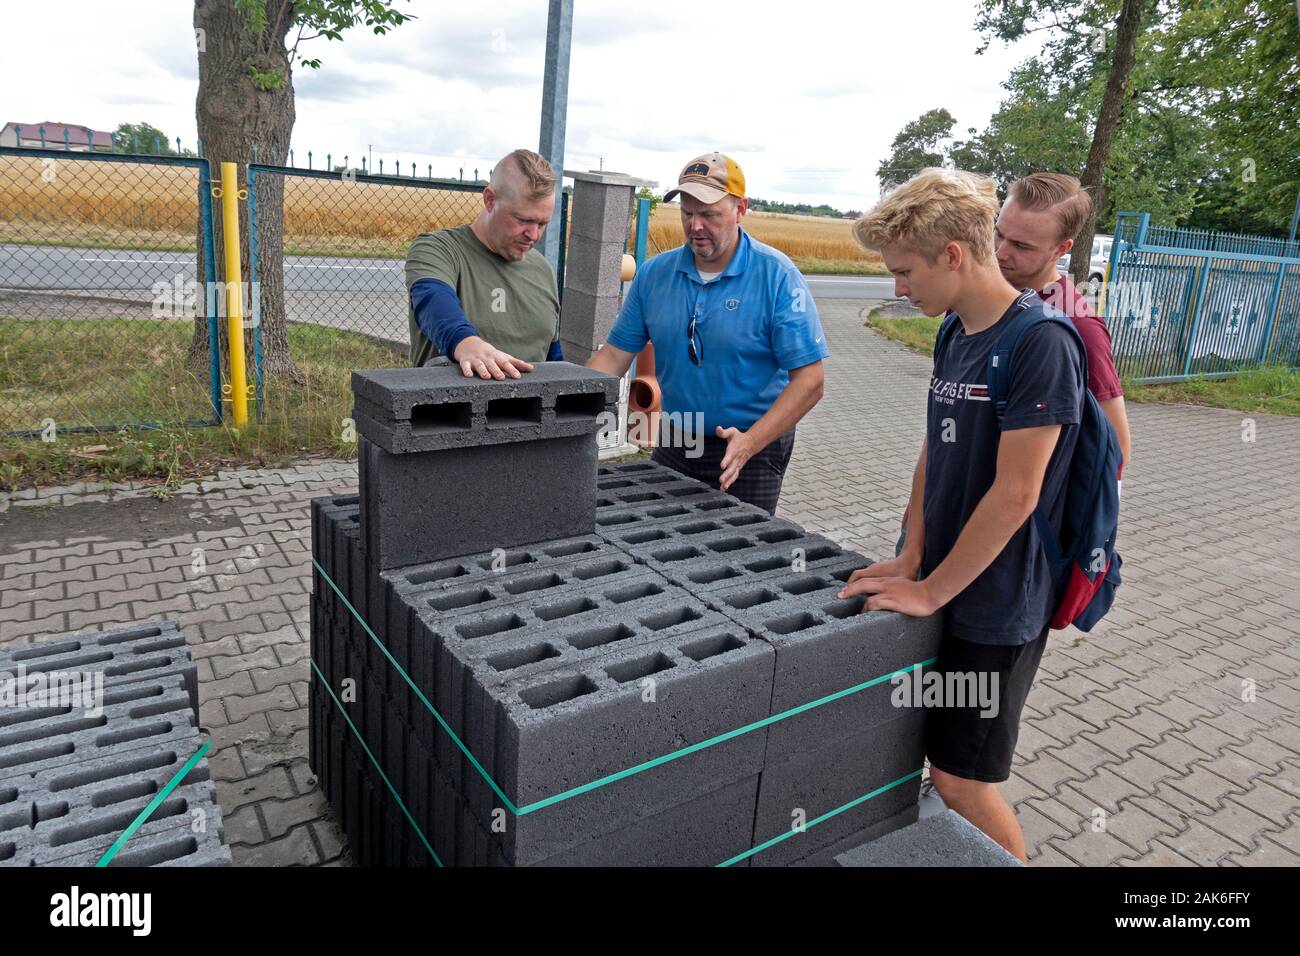 Due papà ciascuno con i propri figli adolescenti cercando di mattoni e la realizzazione di un progetto di costruzione di un caminetto all'aperto. Rzeczyca Polonia centrale Europa Foto Stock